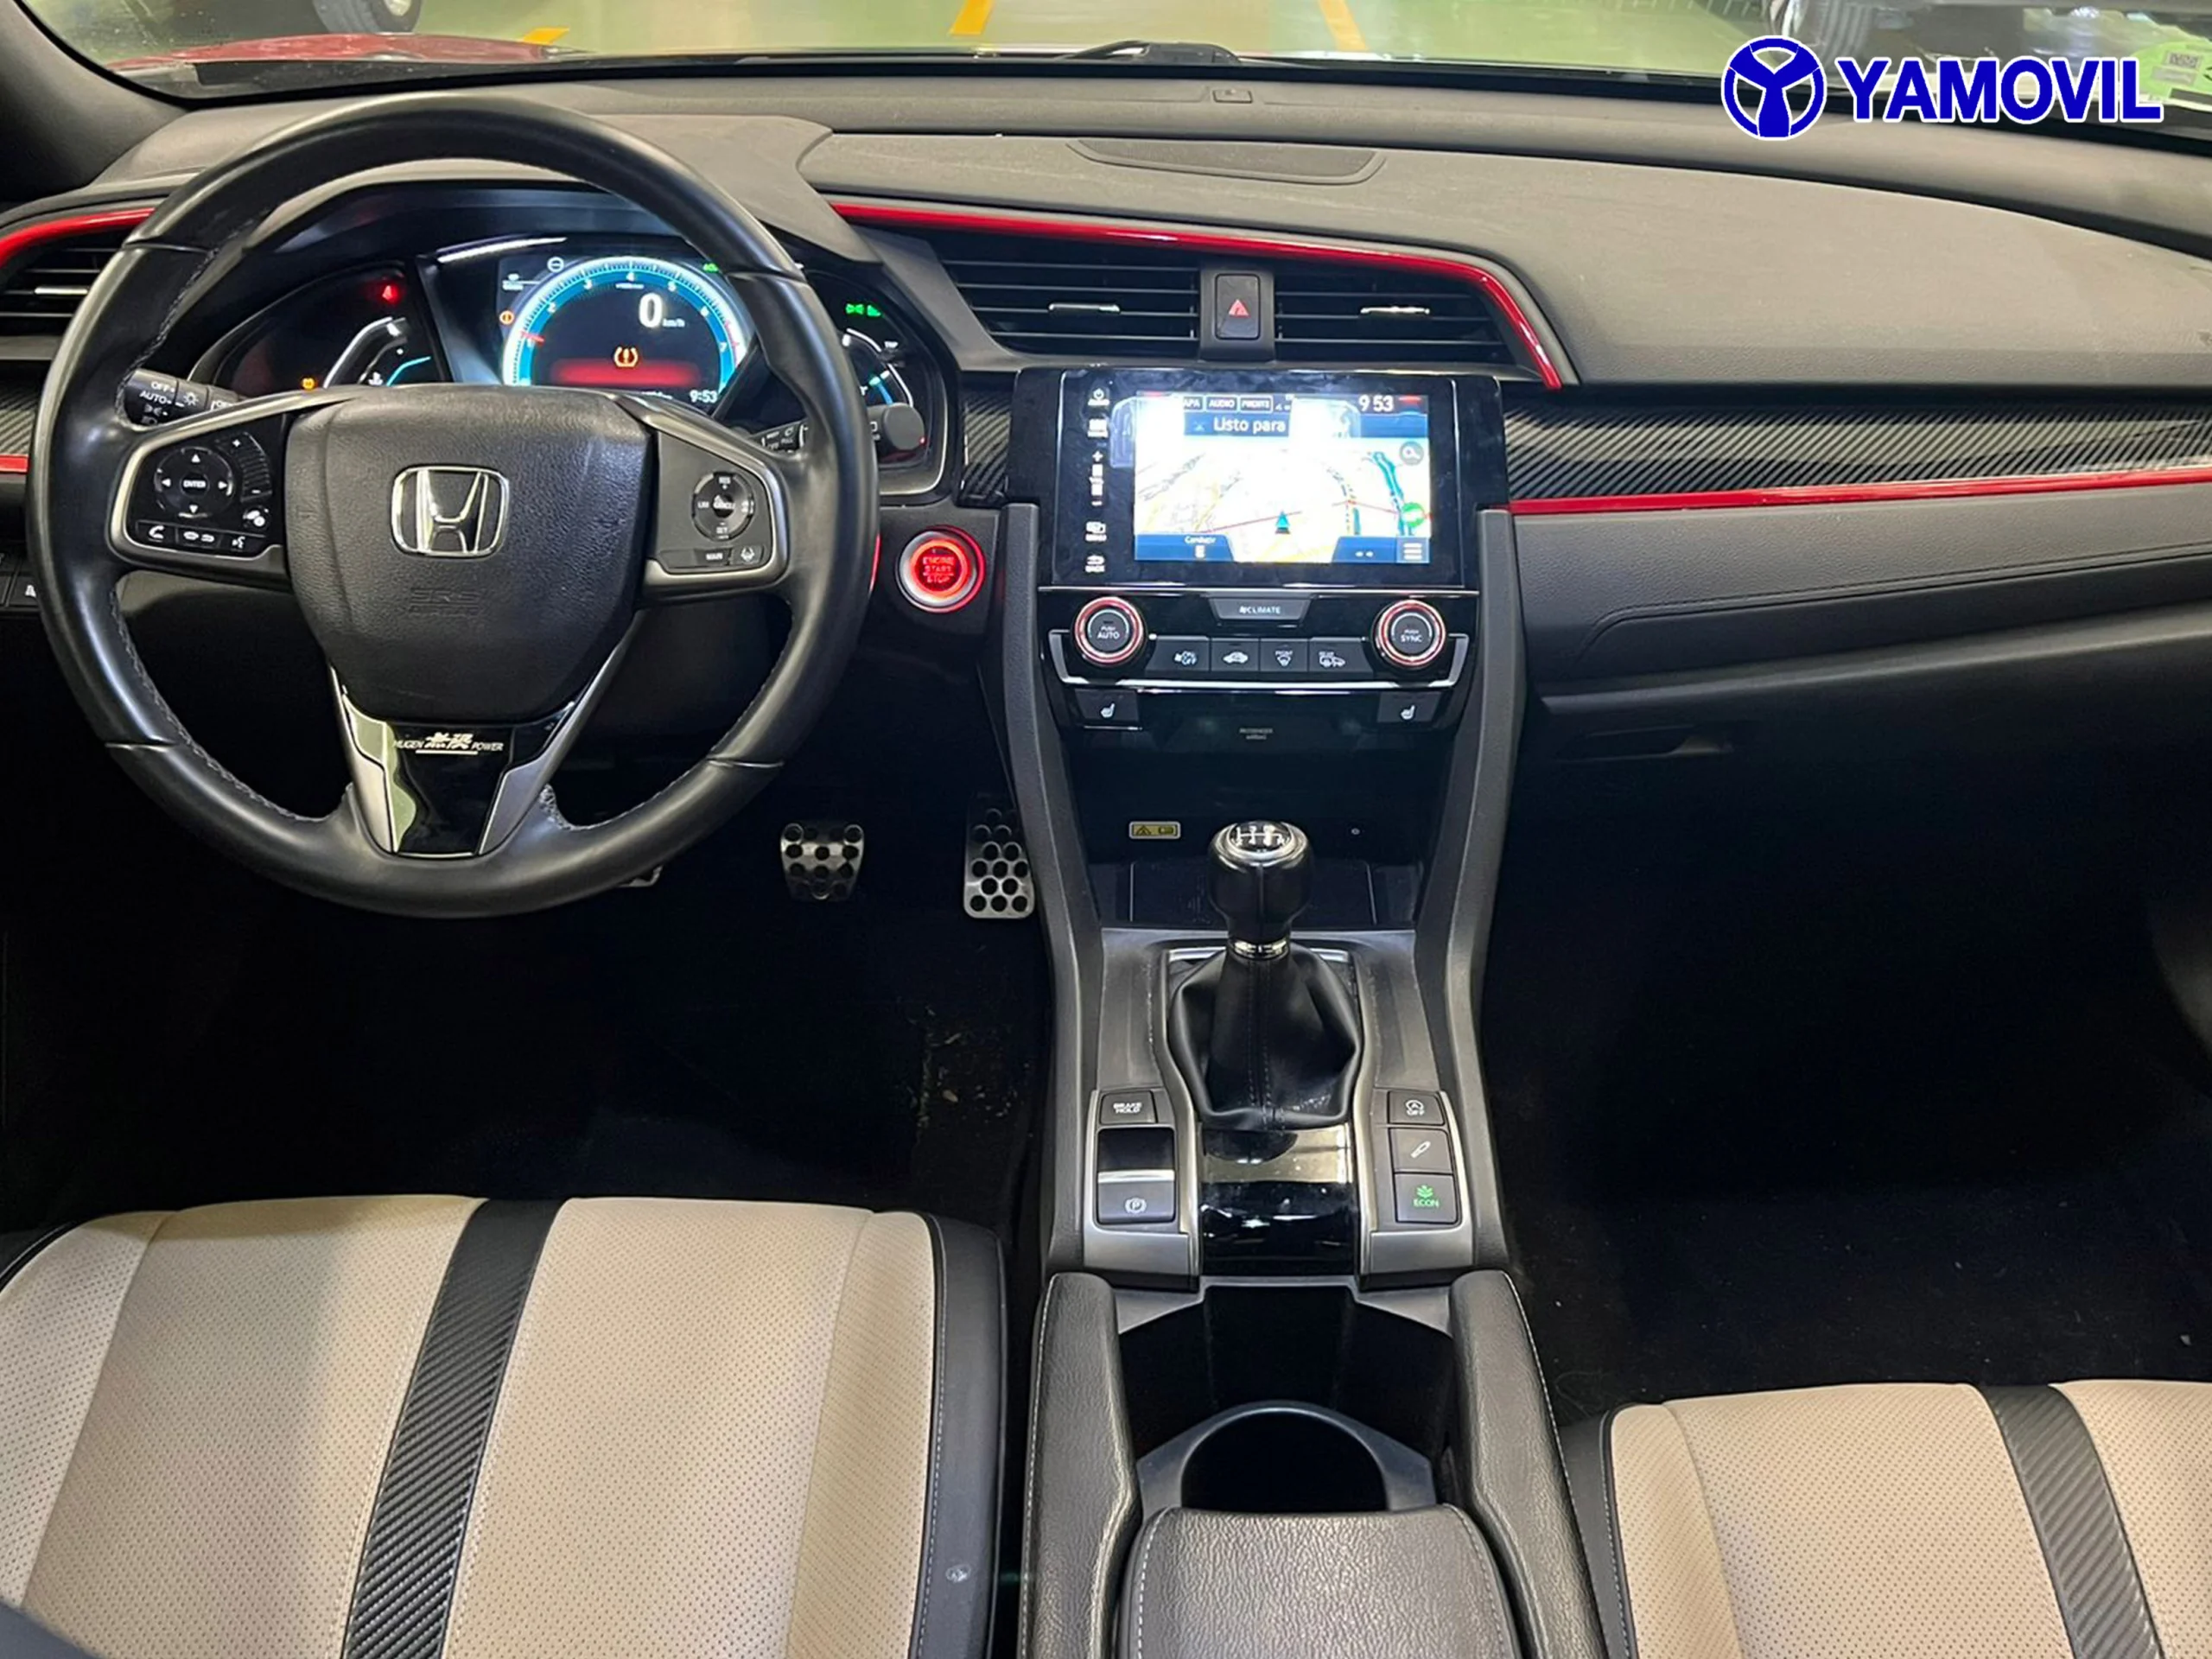 Honda Civic 1.5 VTEC TURBO PRESTIGE 5P - Foto 3